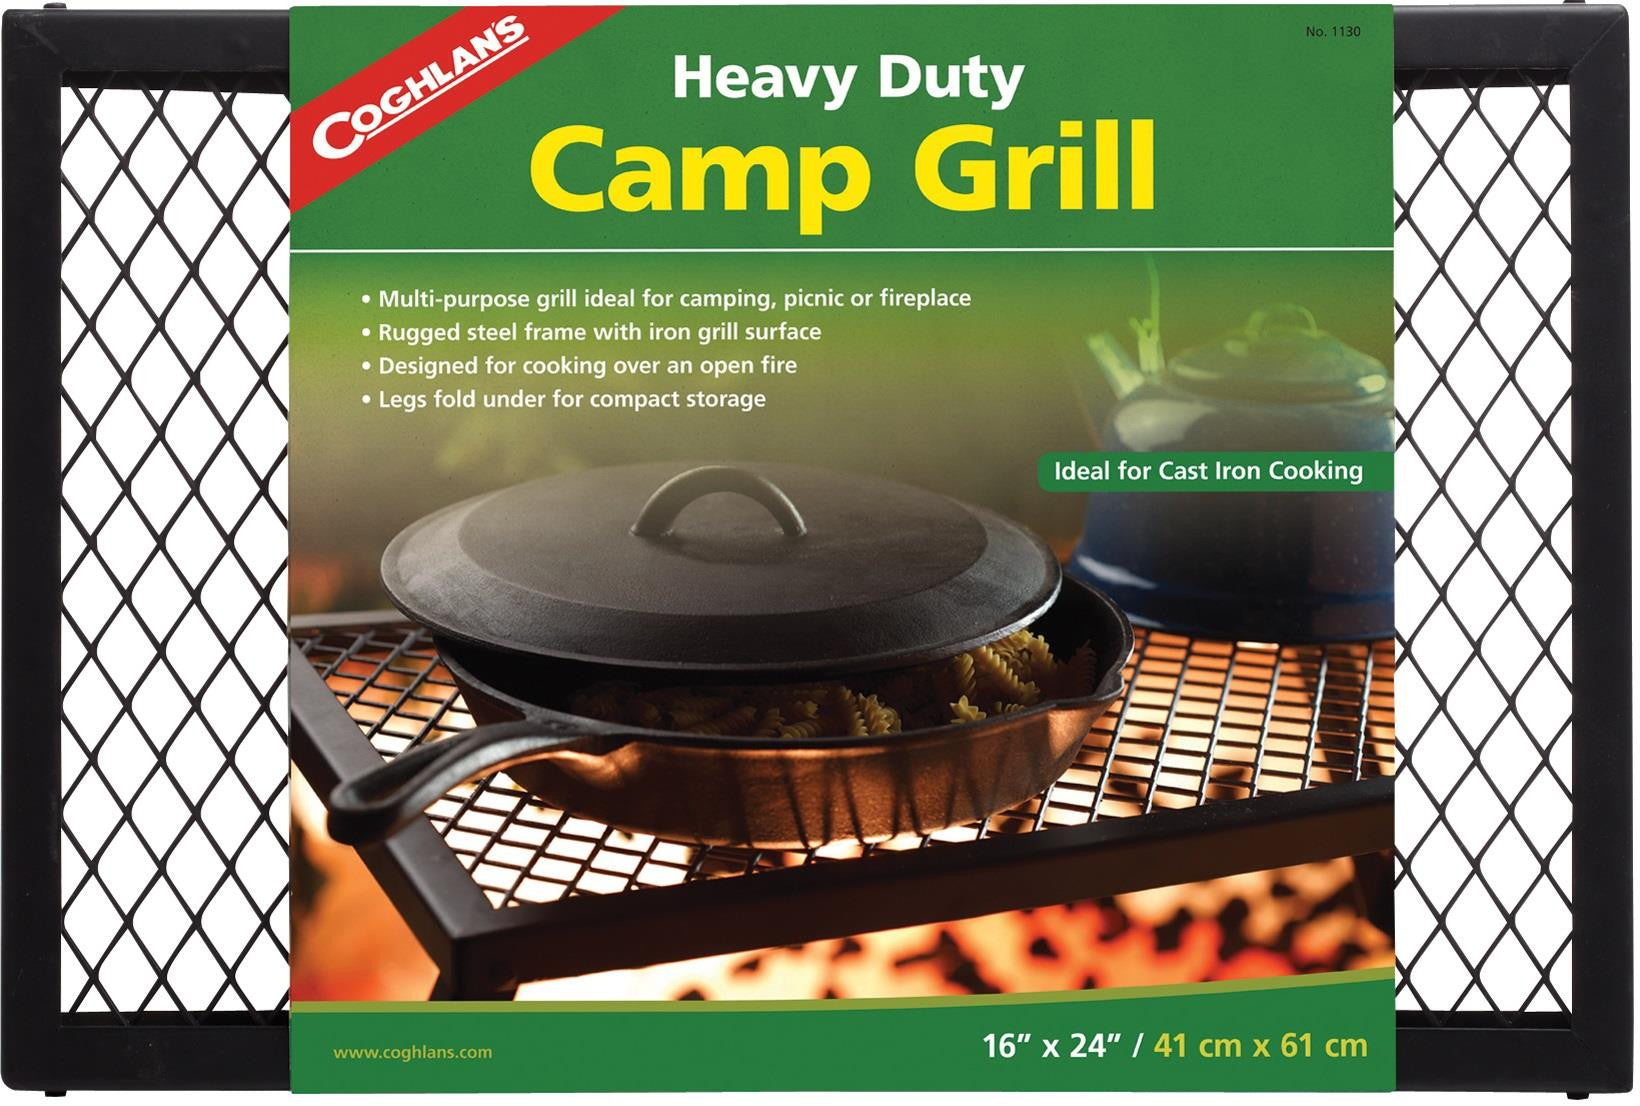 Coghlan's Heavy Duty Camp Grill 16"x24"